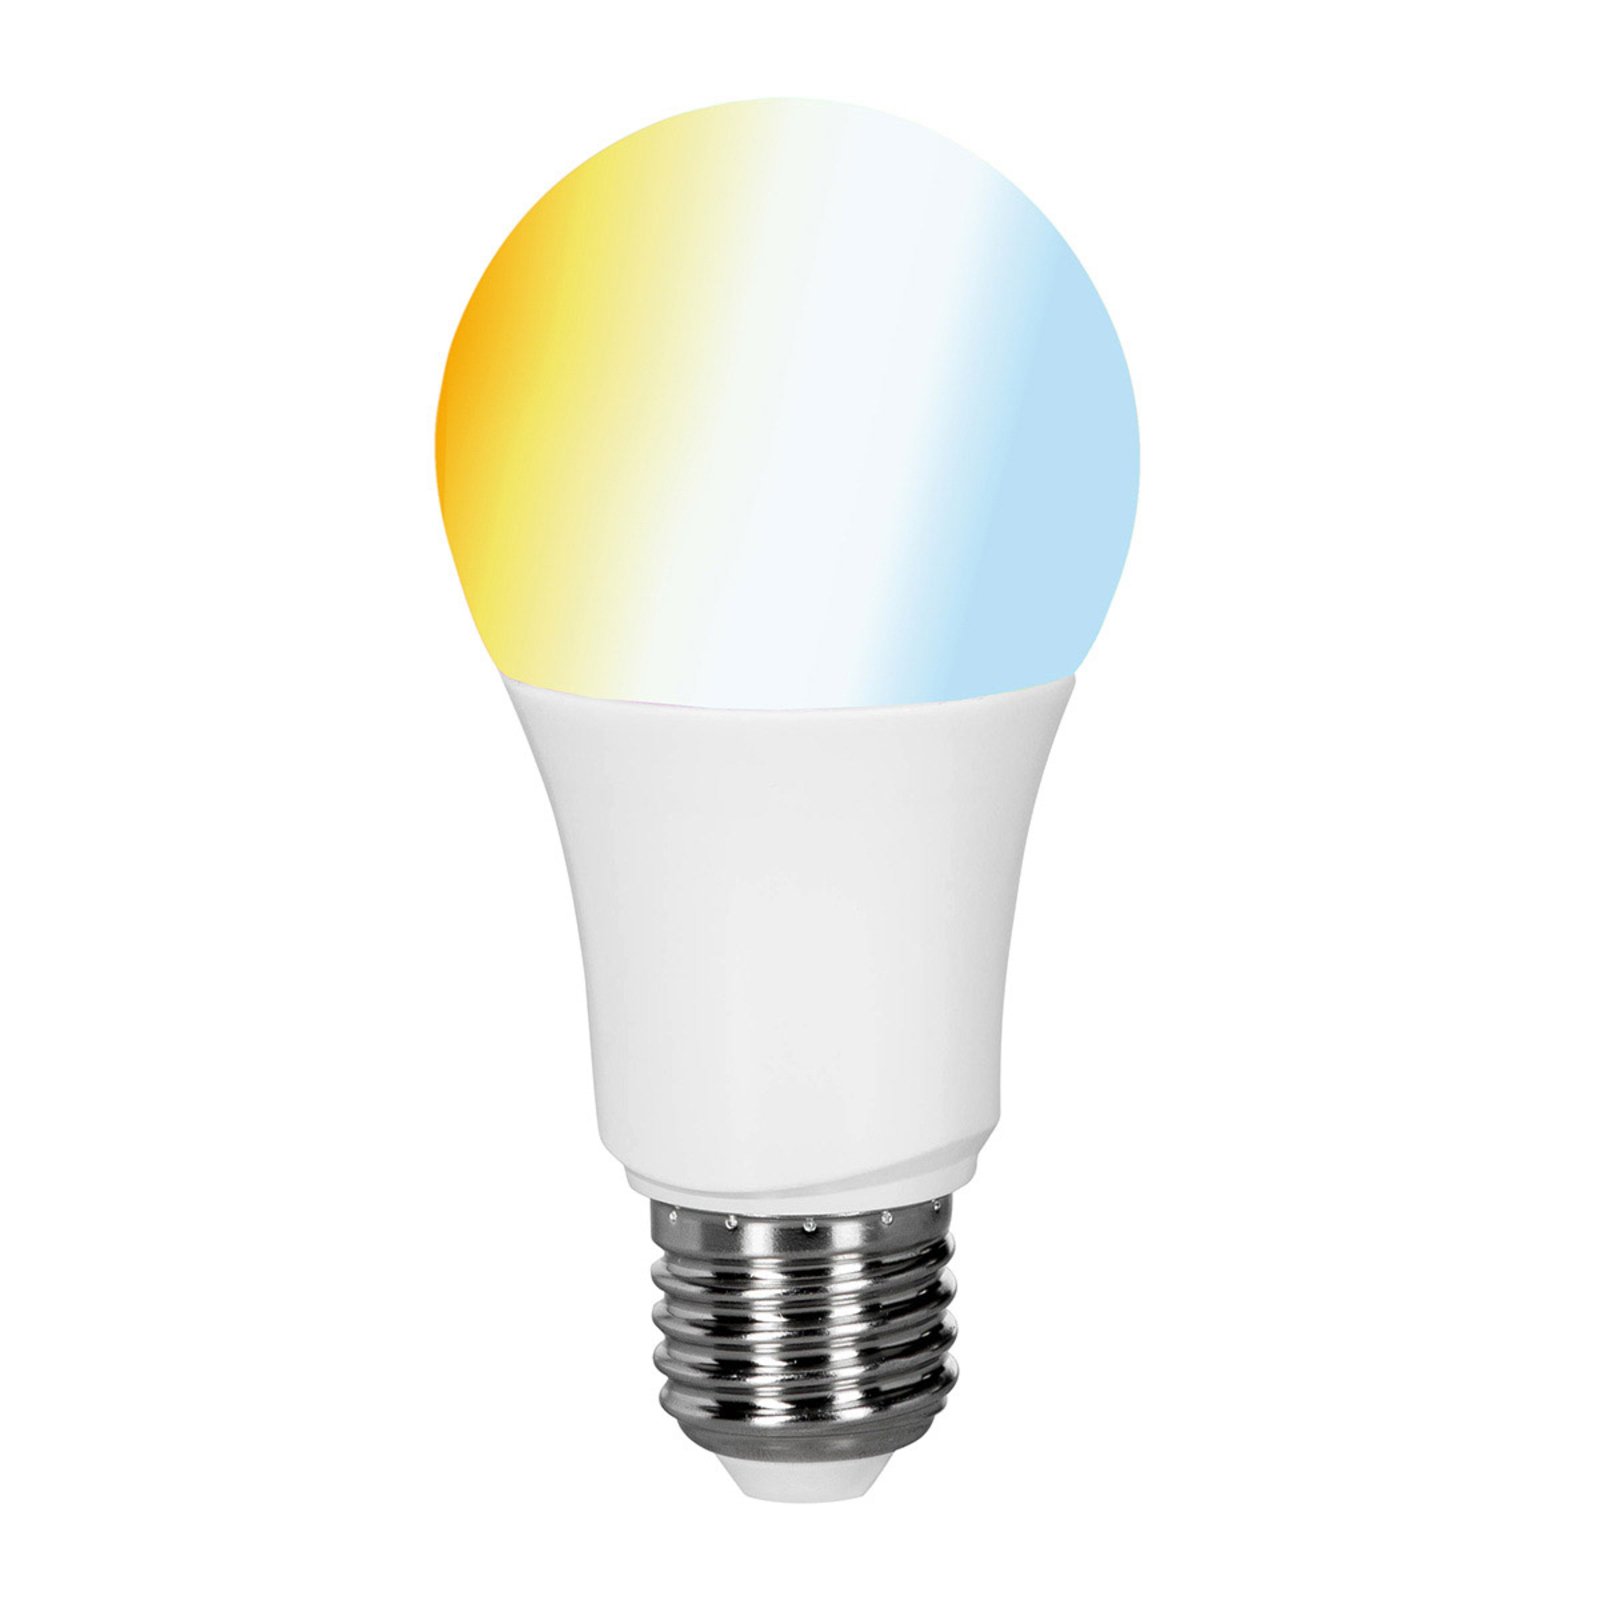 Müller Licht tint valge LED lamp E27 9W, CCT